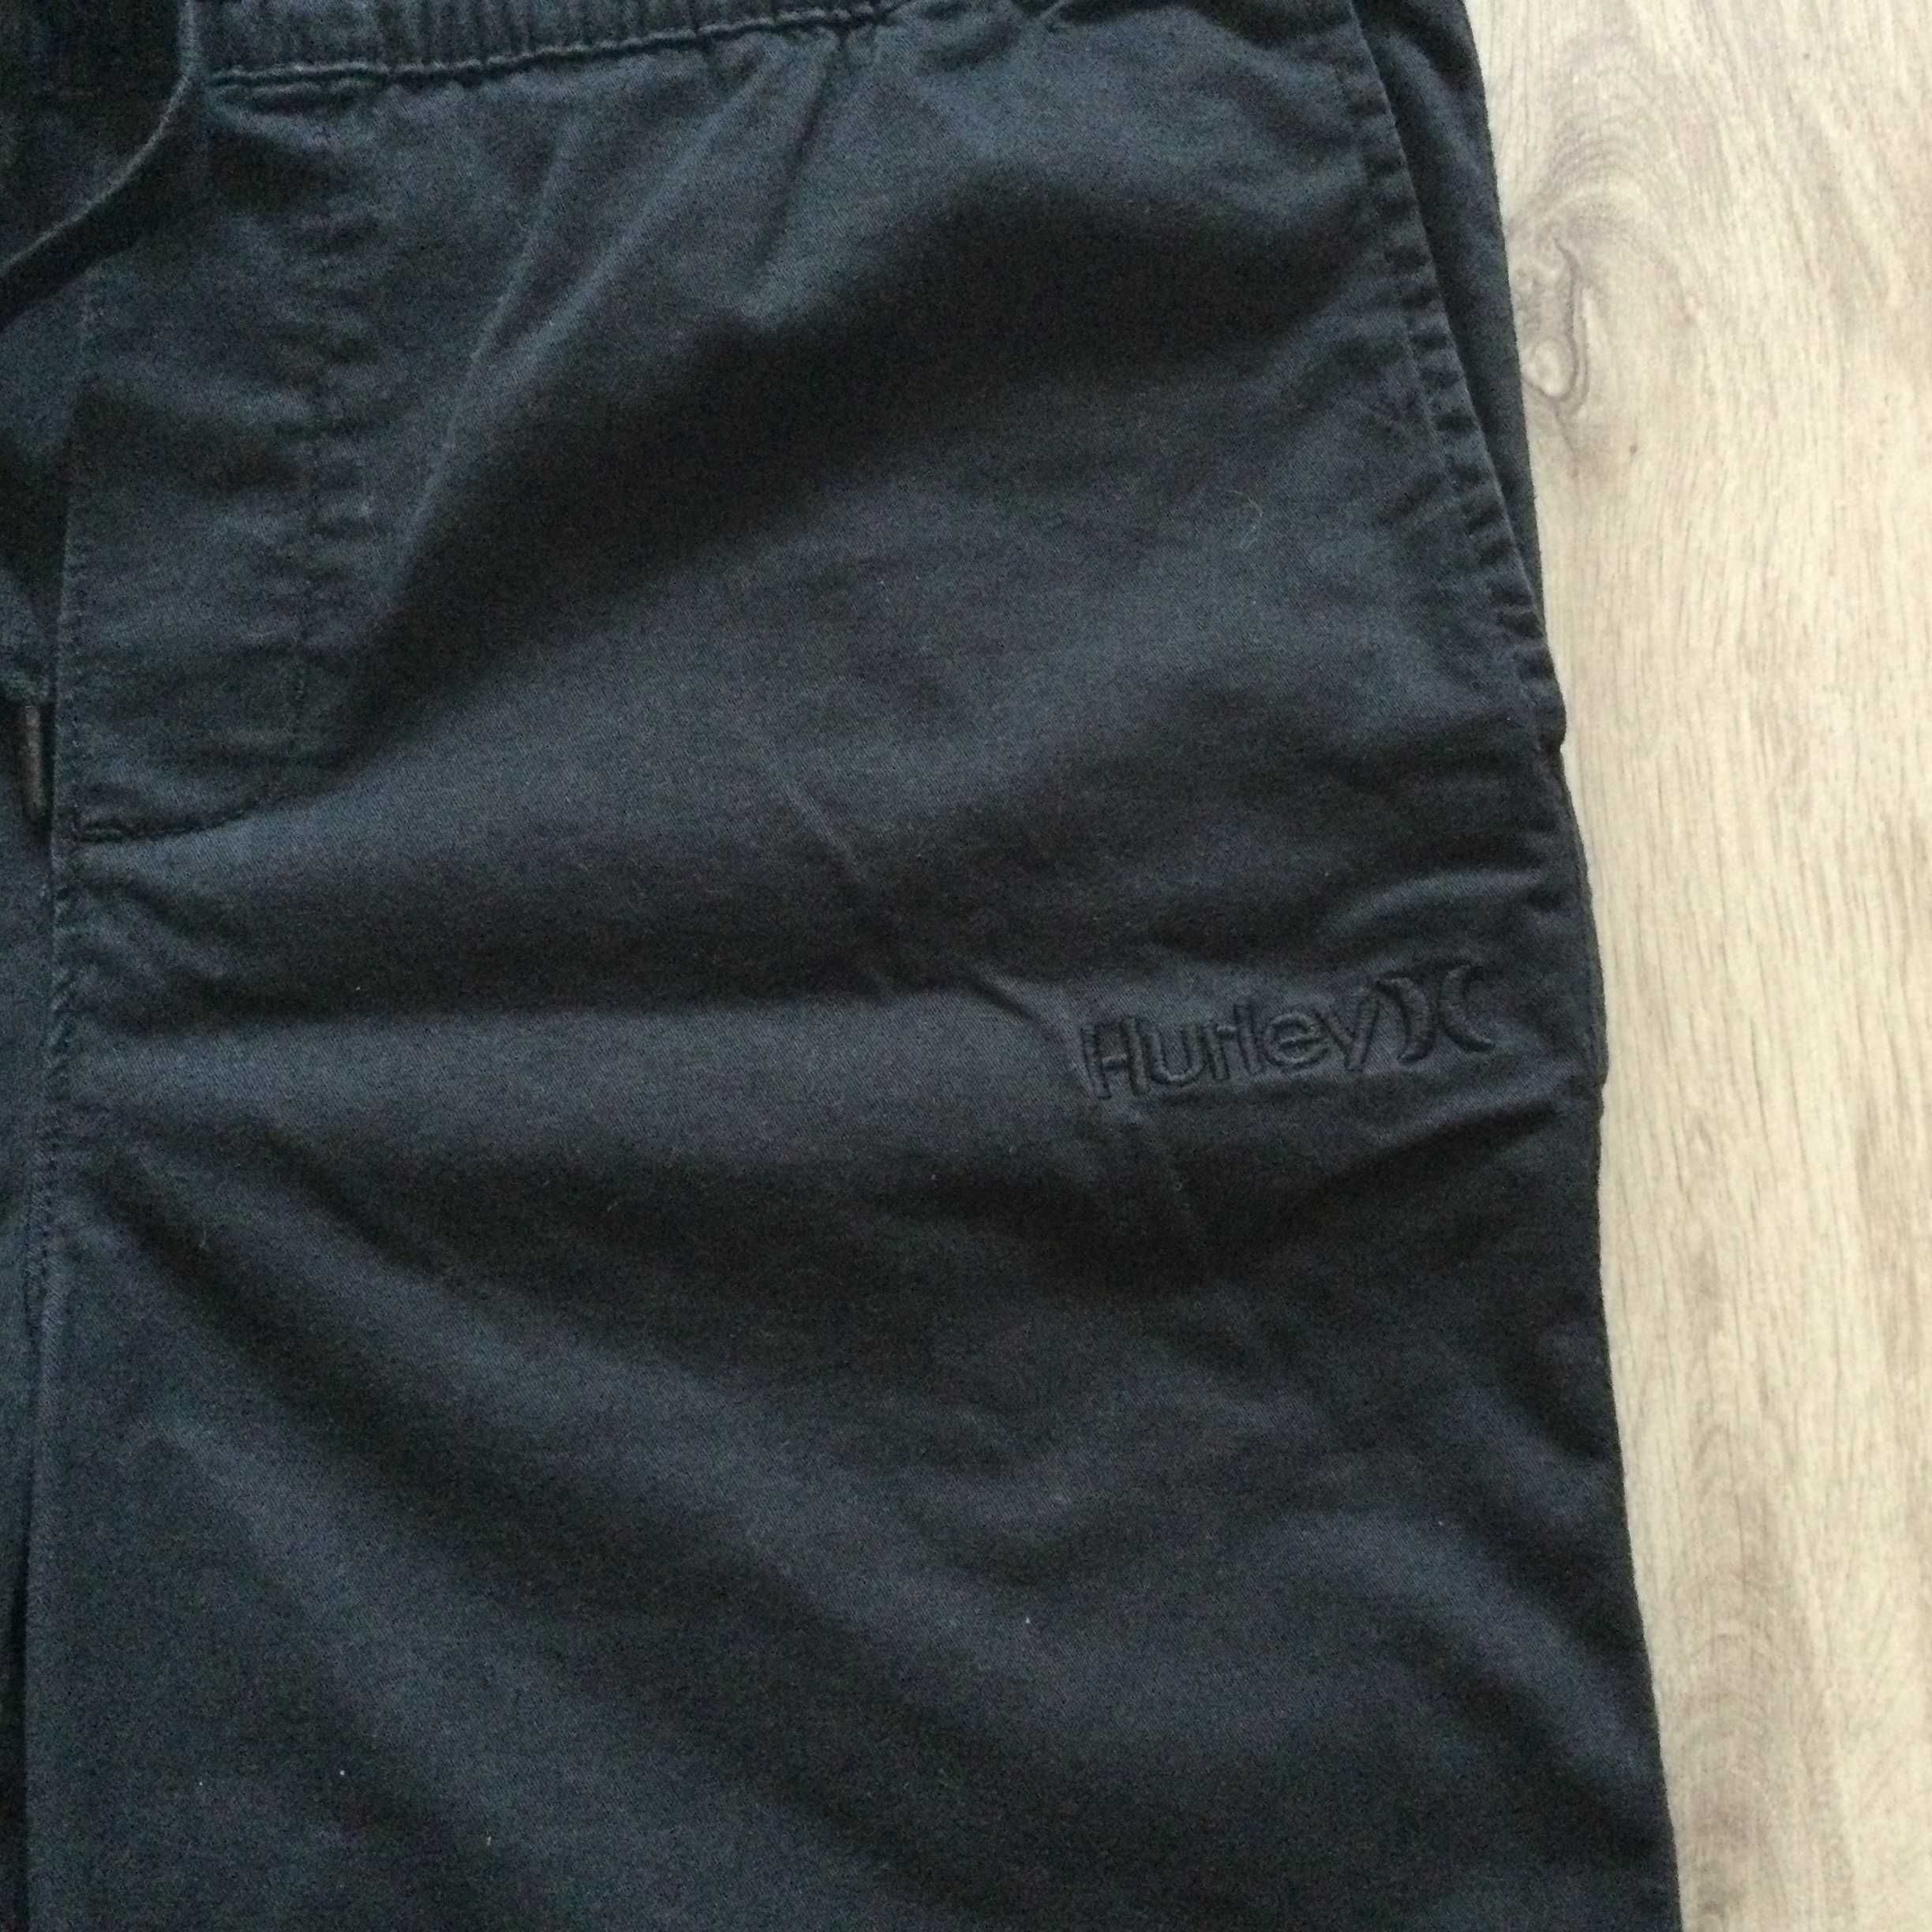 НОВИ оригинални черни къси панталони / бермуди HURLEY размер L от САЩ